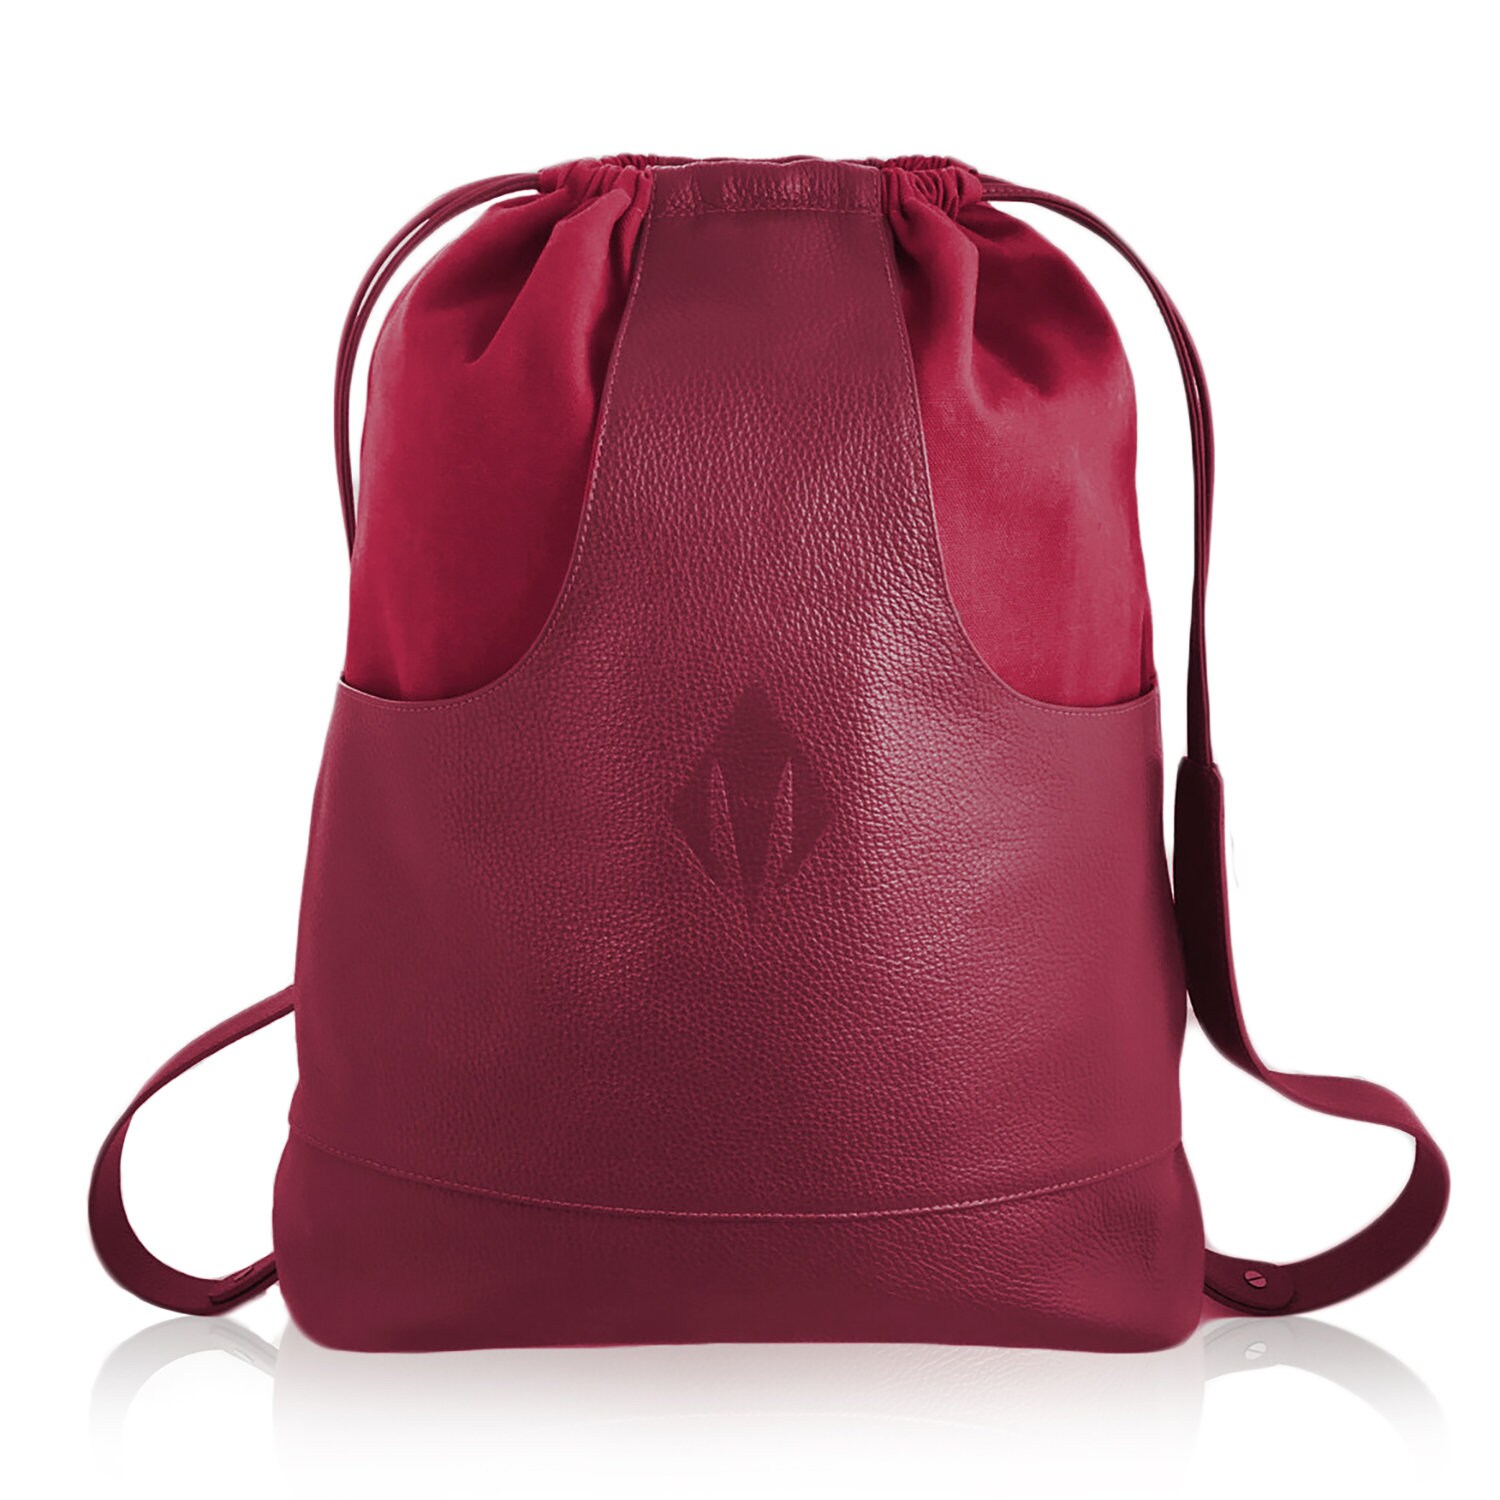 scheuren fluiten magie Nomad Bag Leather Bag Drawstring Bag Carry on Backpack - Etsy